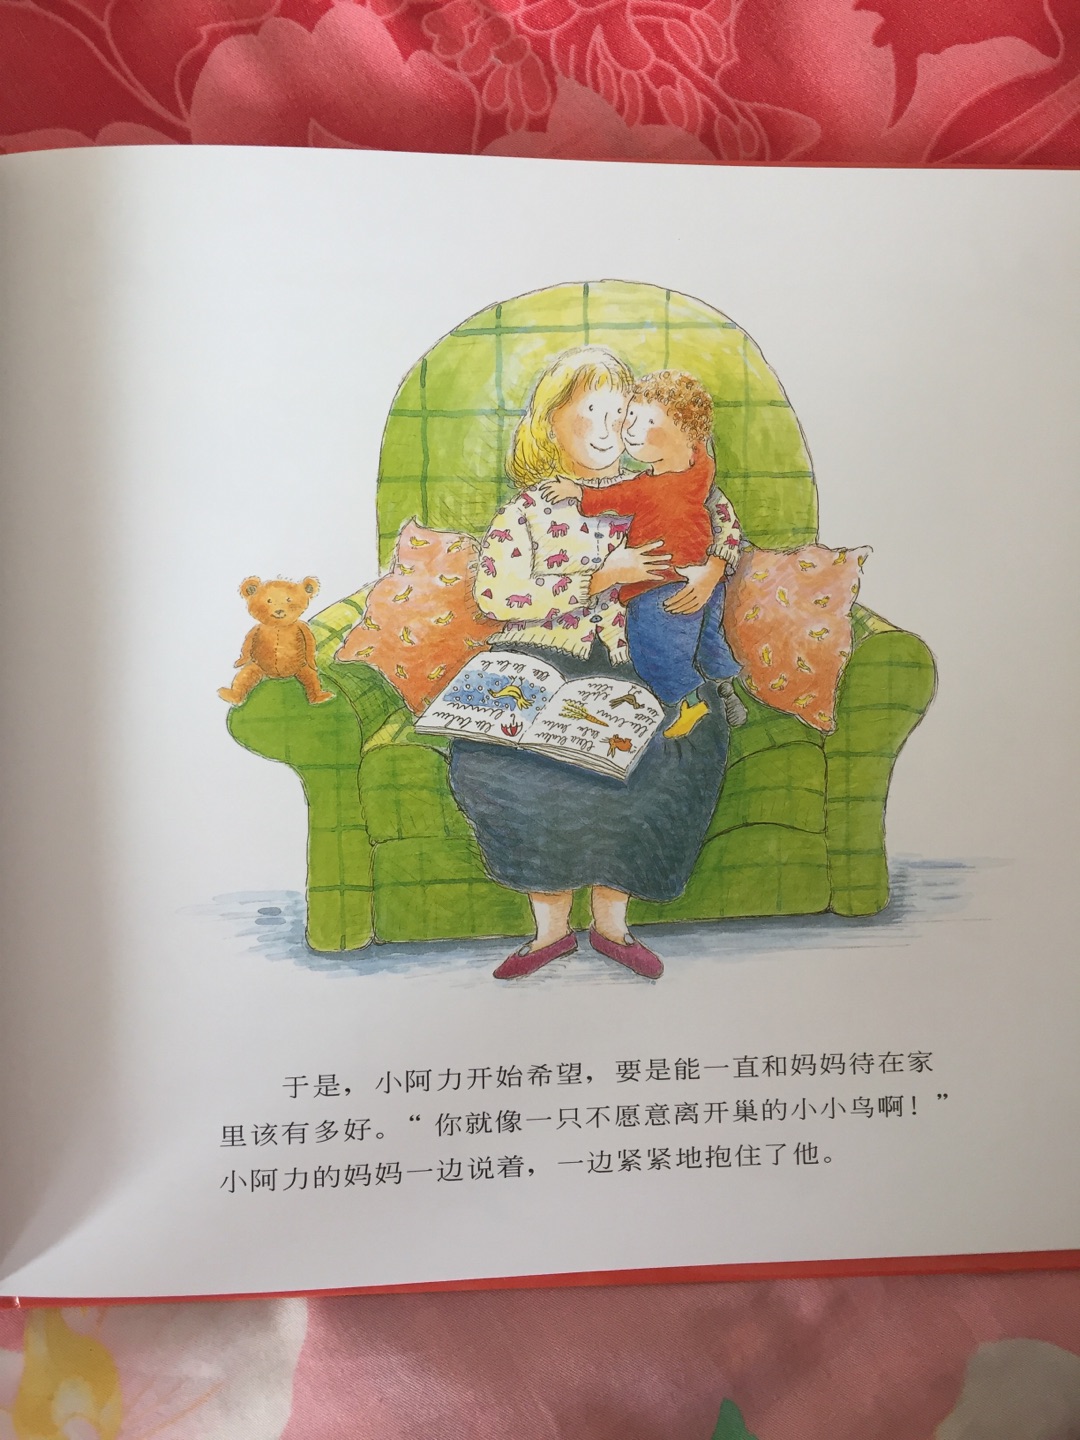 书的质量棒棒哒，让宝贝喜欢上上幼儿园，很不错的一本书，推荐给宝妈们